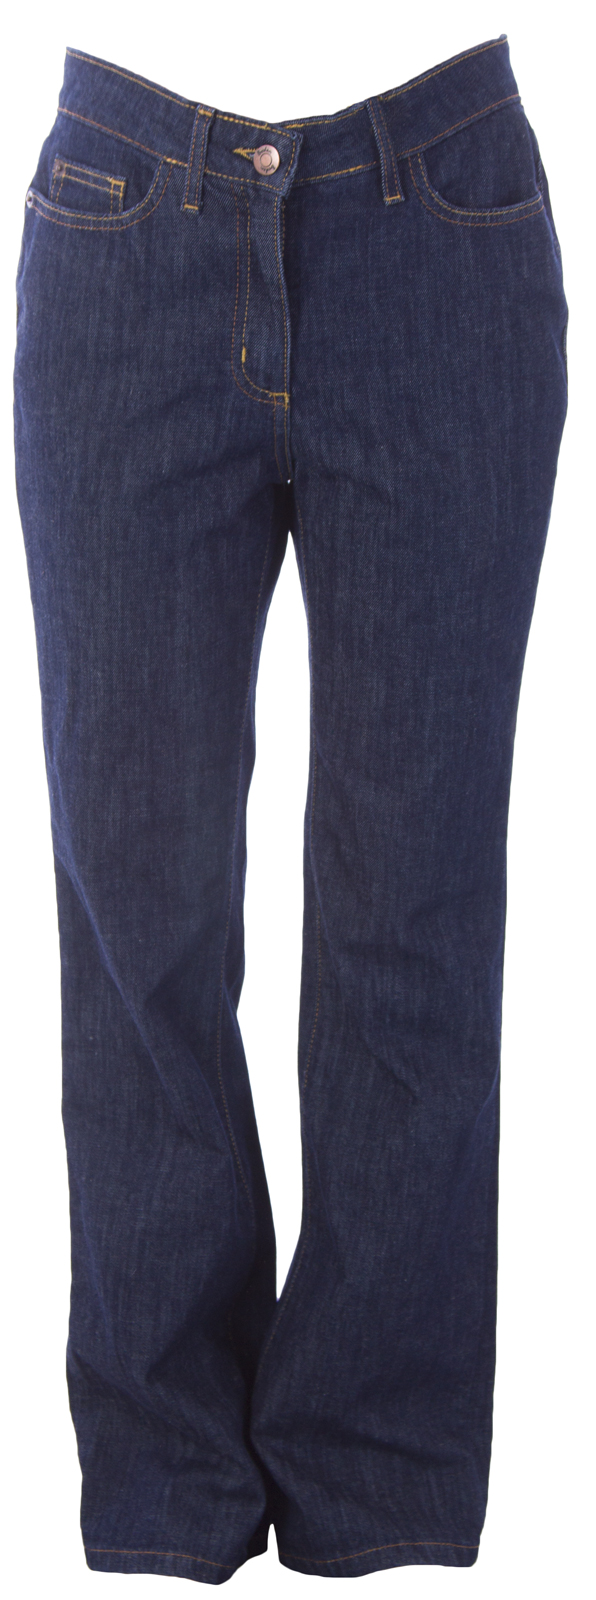 BODEN Women's Dark Indigo Bootcut Jeans WC098 US Sz 4R $98 NWOT ...